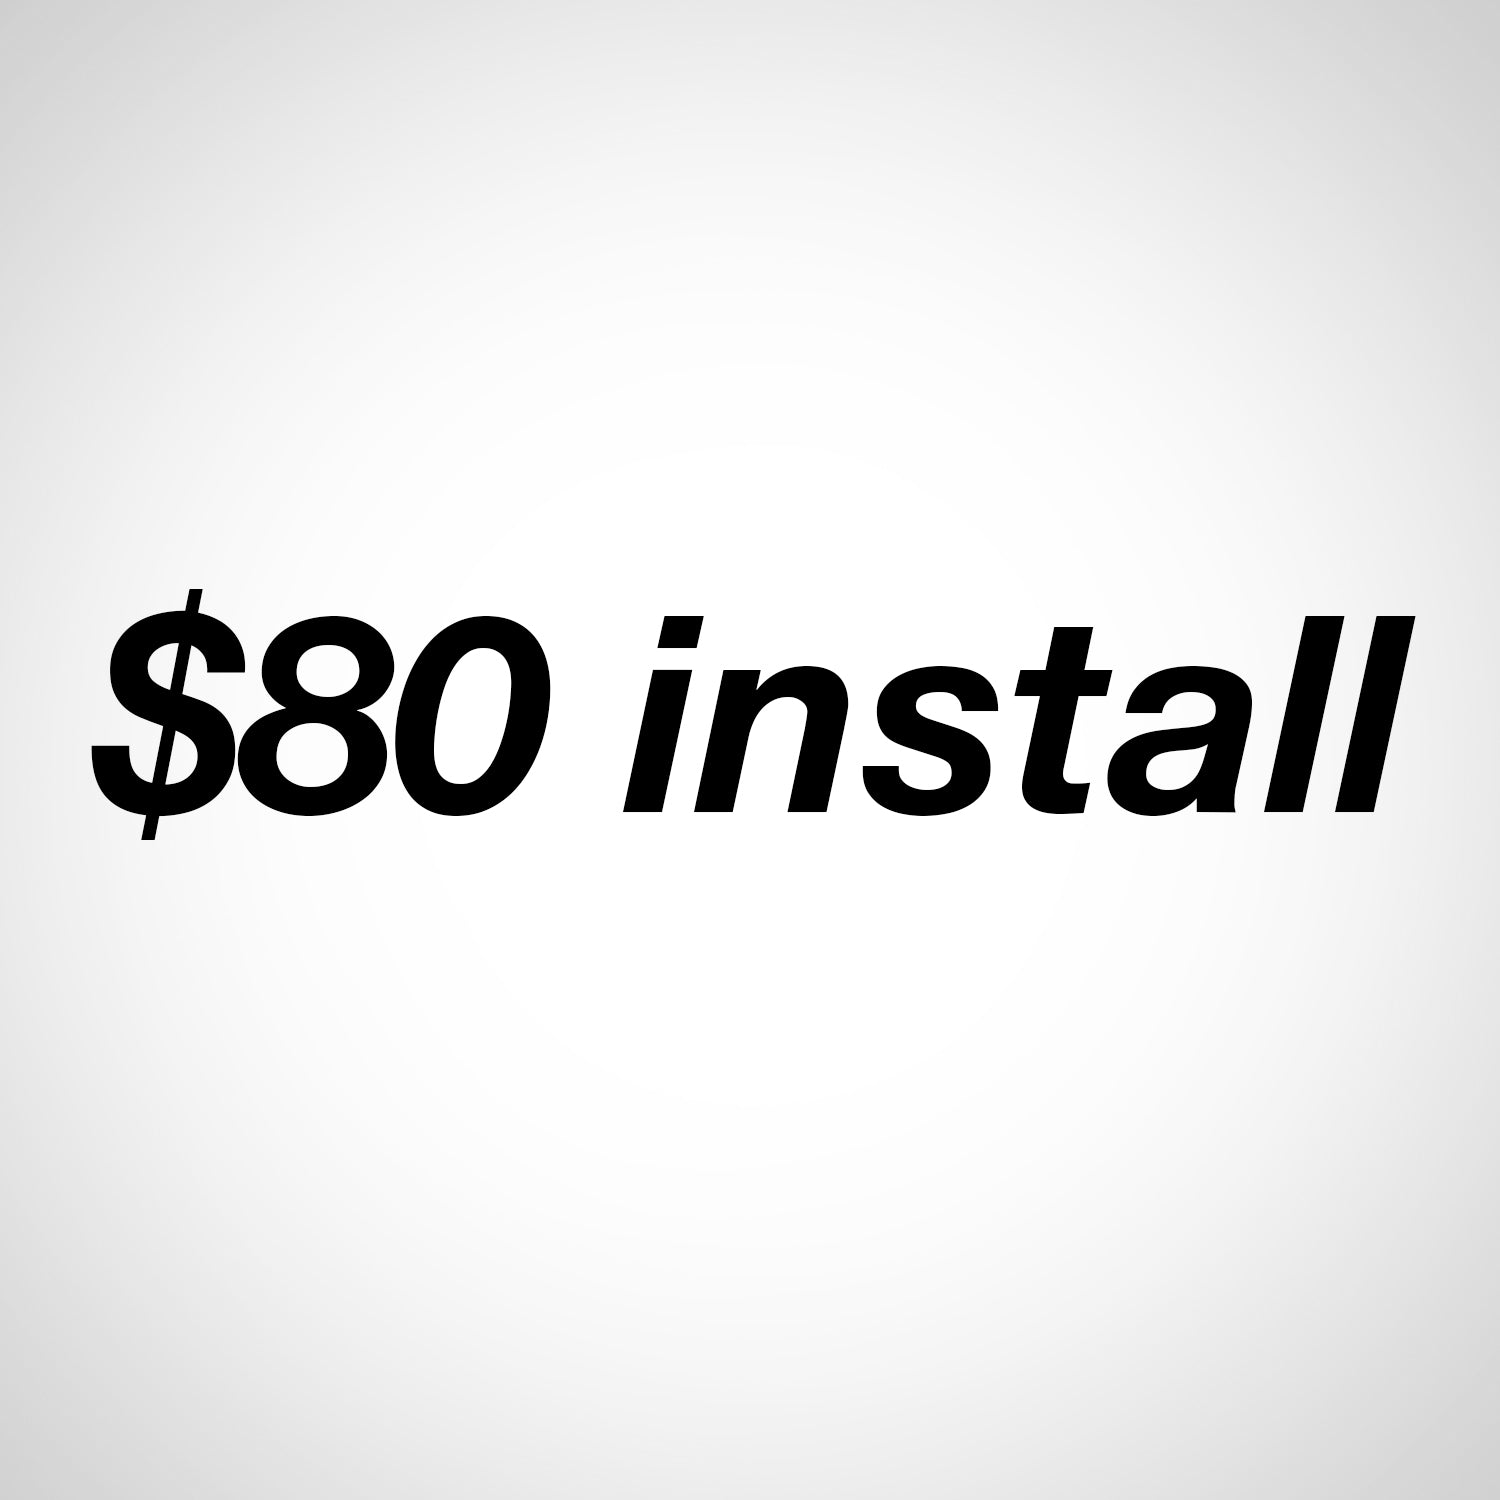 $80 install